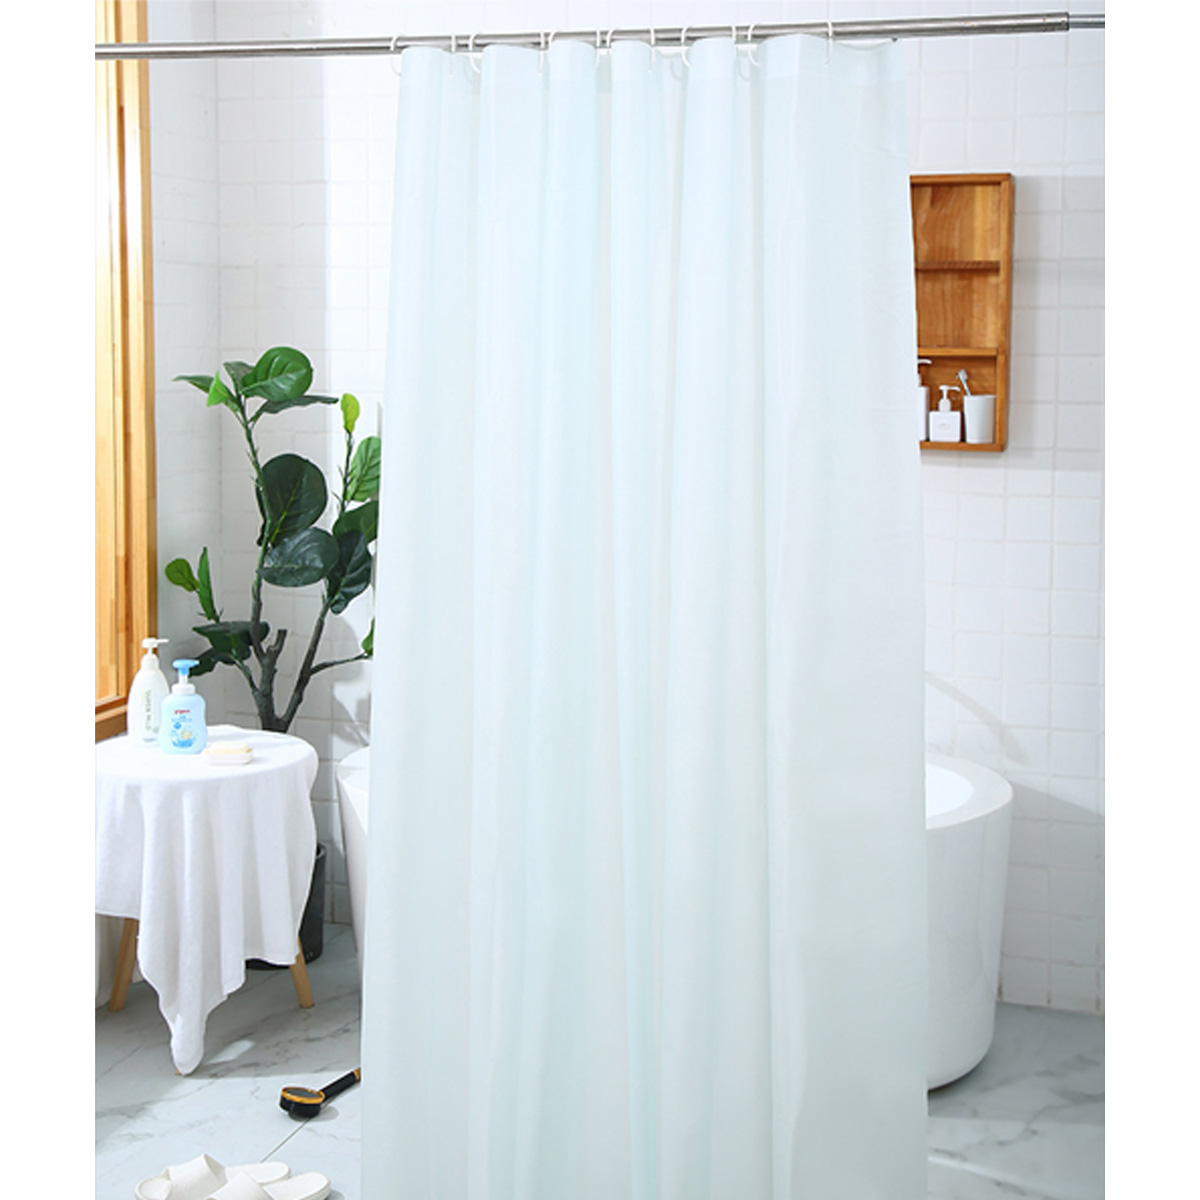 シャワーカーテン 防水 180cmx180cm 180 無地 シンプル 風呂 カーテン